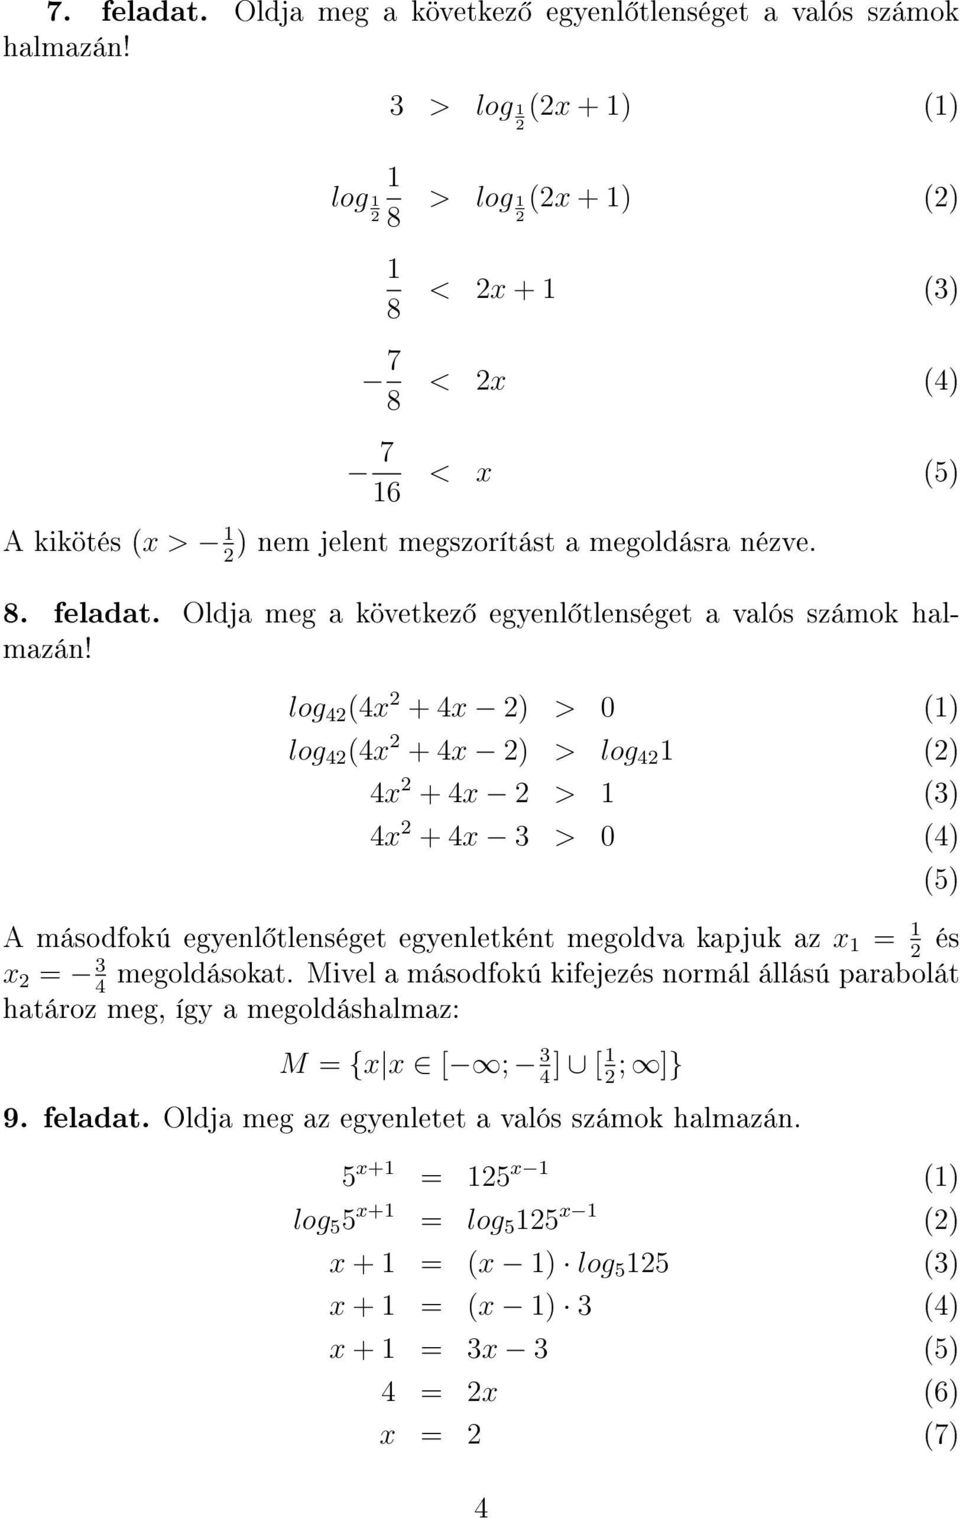 Logaritmikus egyenletek Szakközépiskola, 11. osztály. 2. feladat. Oldjuk  meg a következ logaritmikus egyenletet! - PDF Ingyenes letöltés